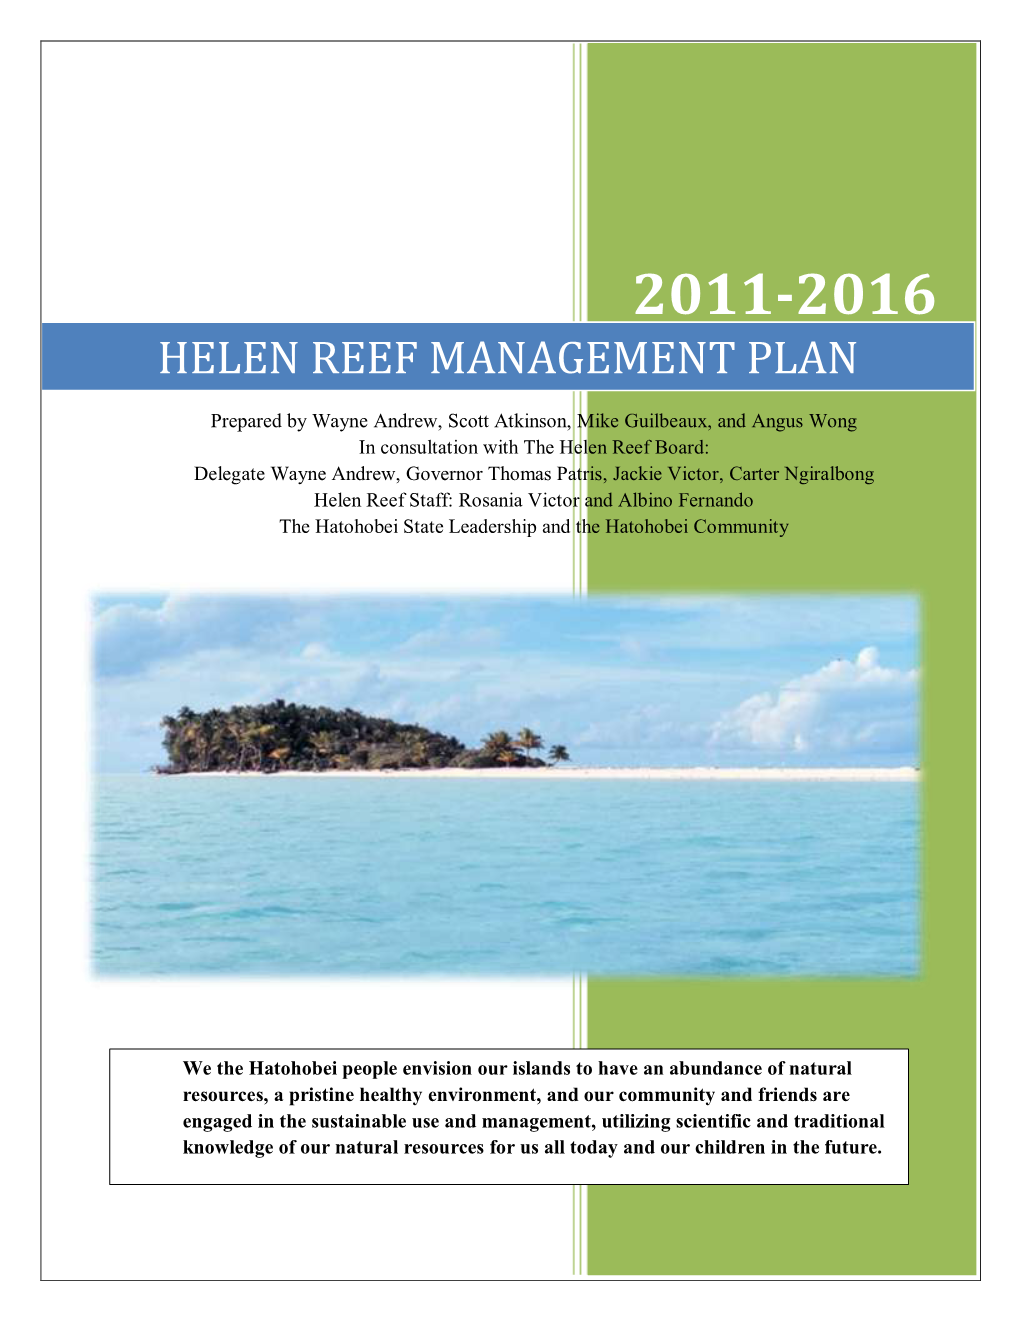 Helen Reef Management Plan